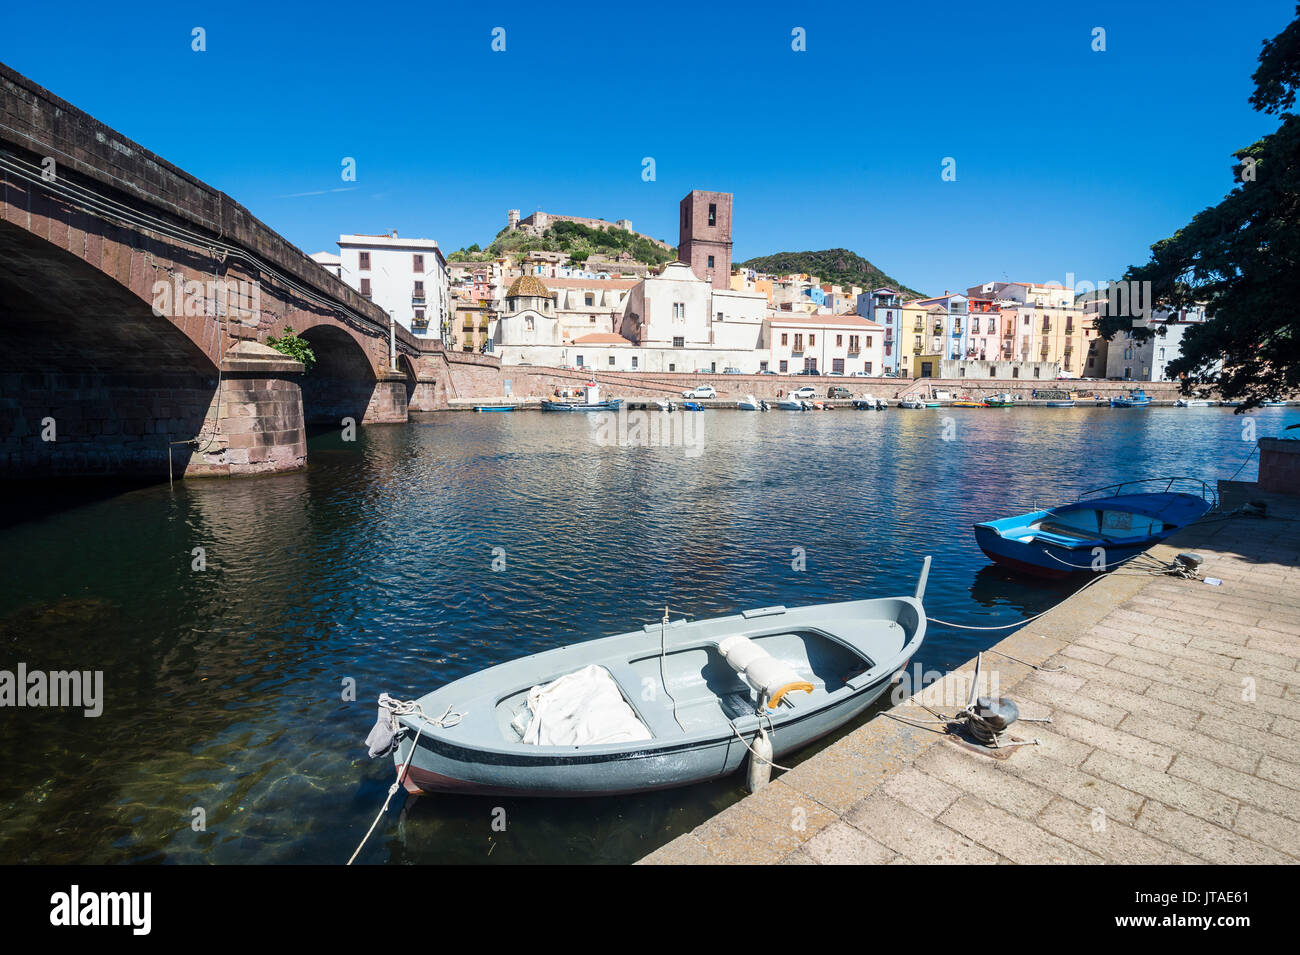 La localidad de Bosa en el río Temo, Cerdeña, Italia, Europa Foto de stock